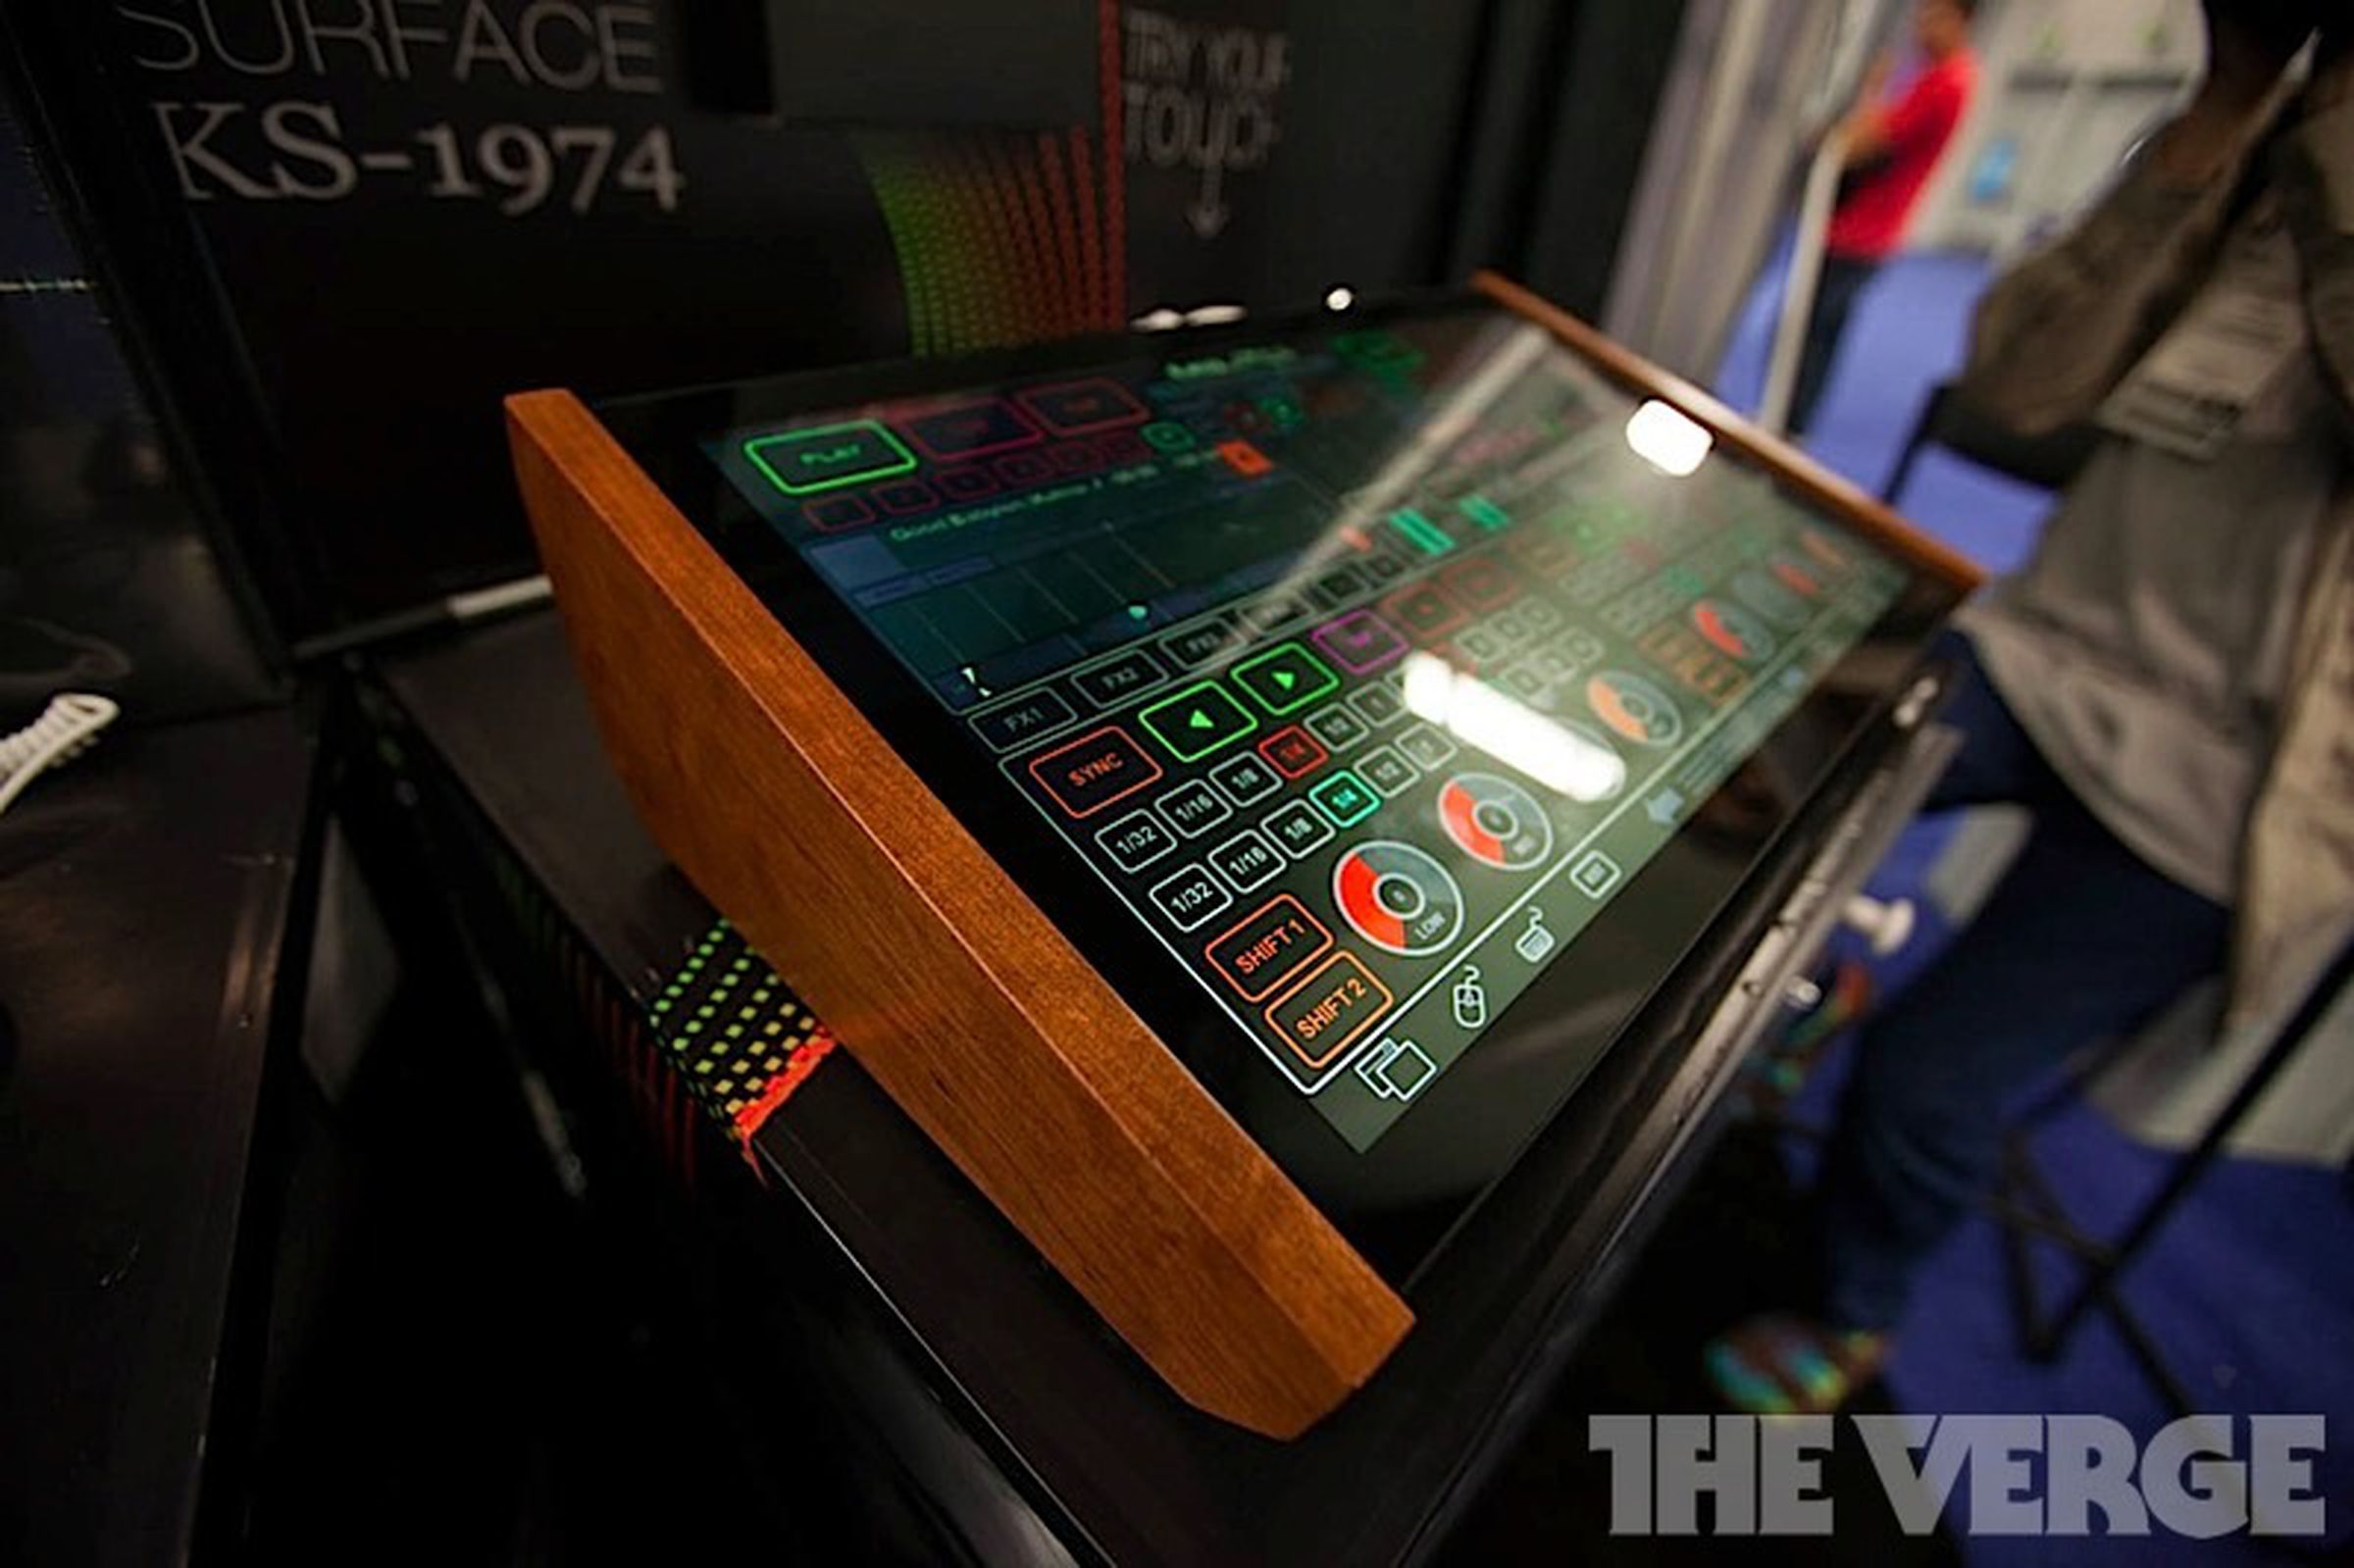 Emulator KS-1974 Kontrol Surface hands-on